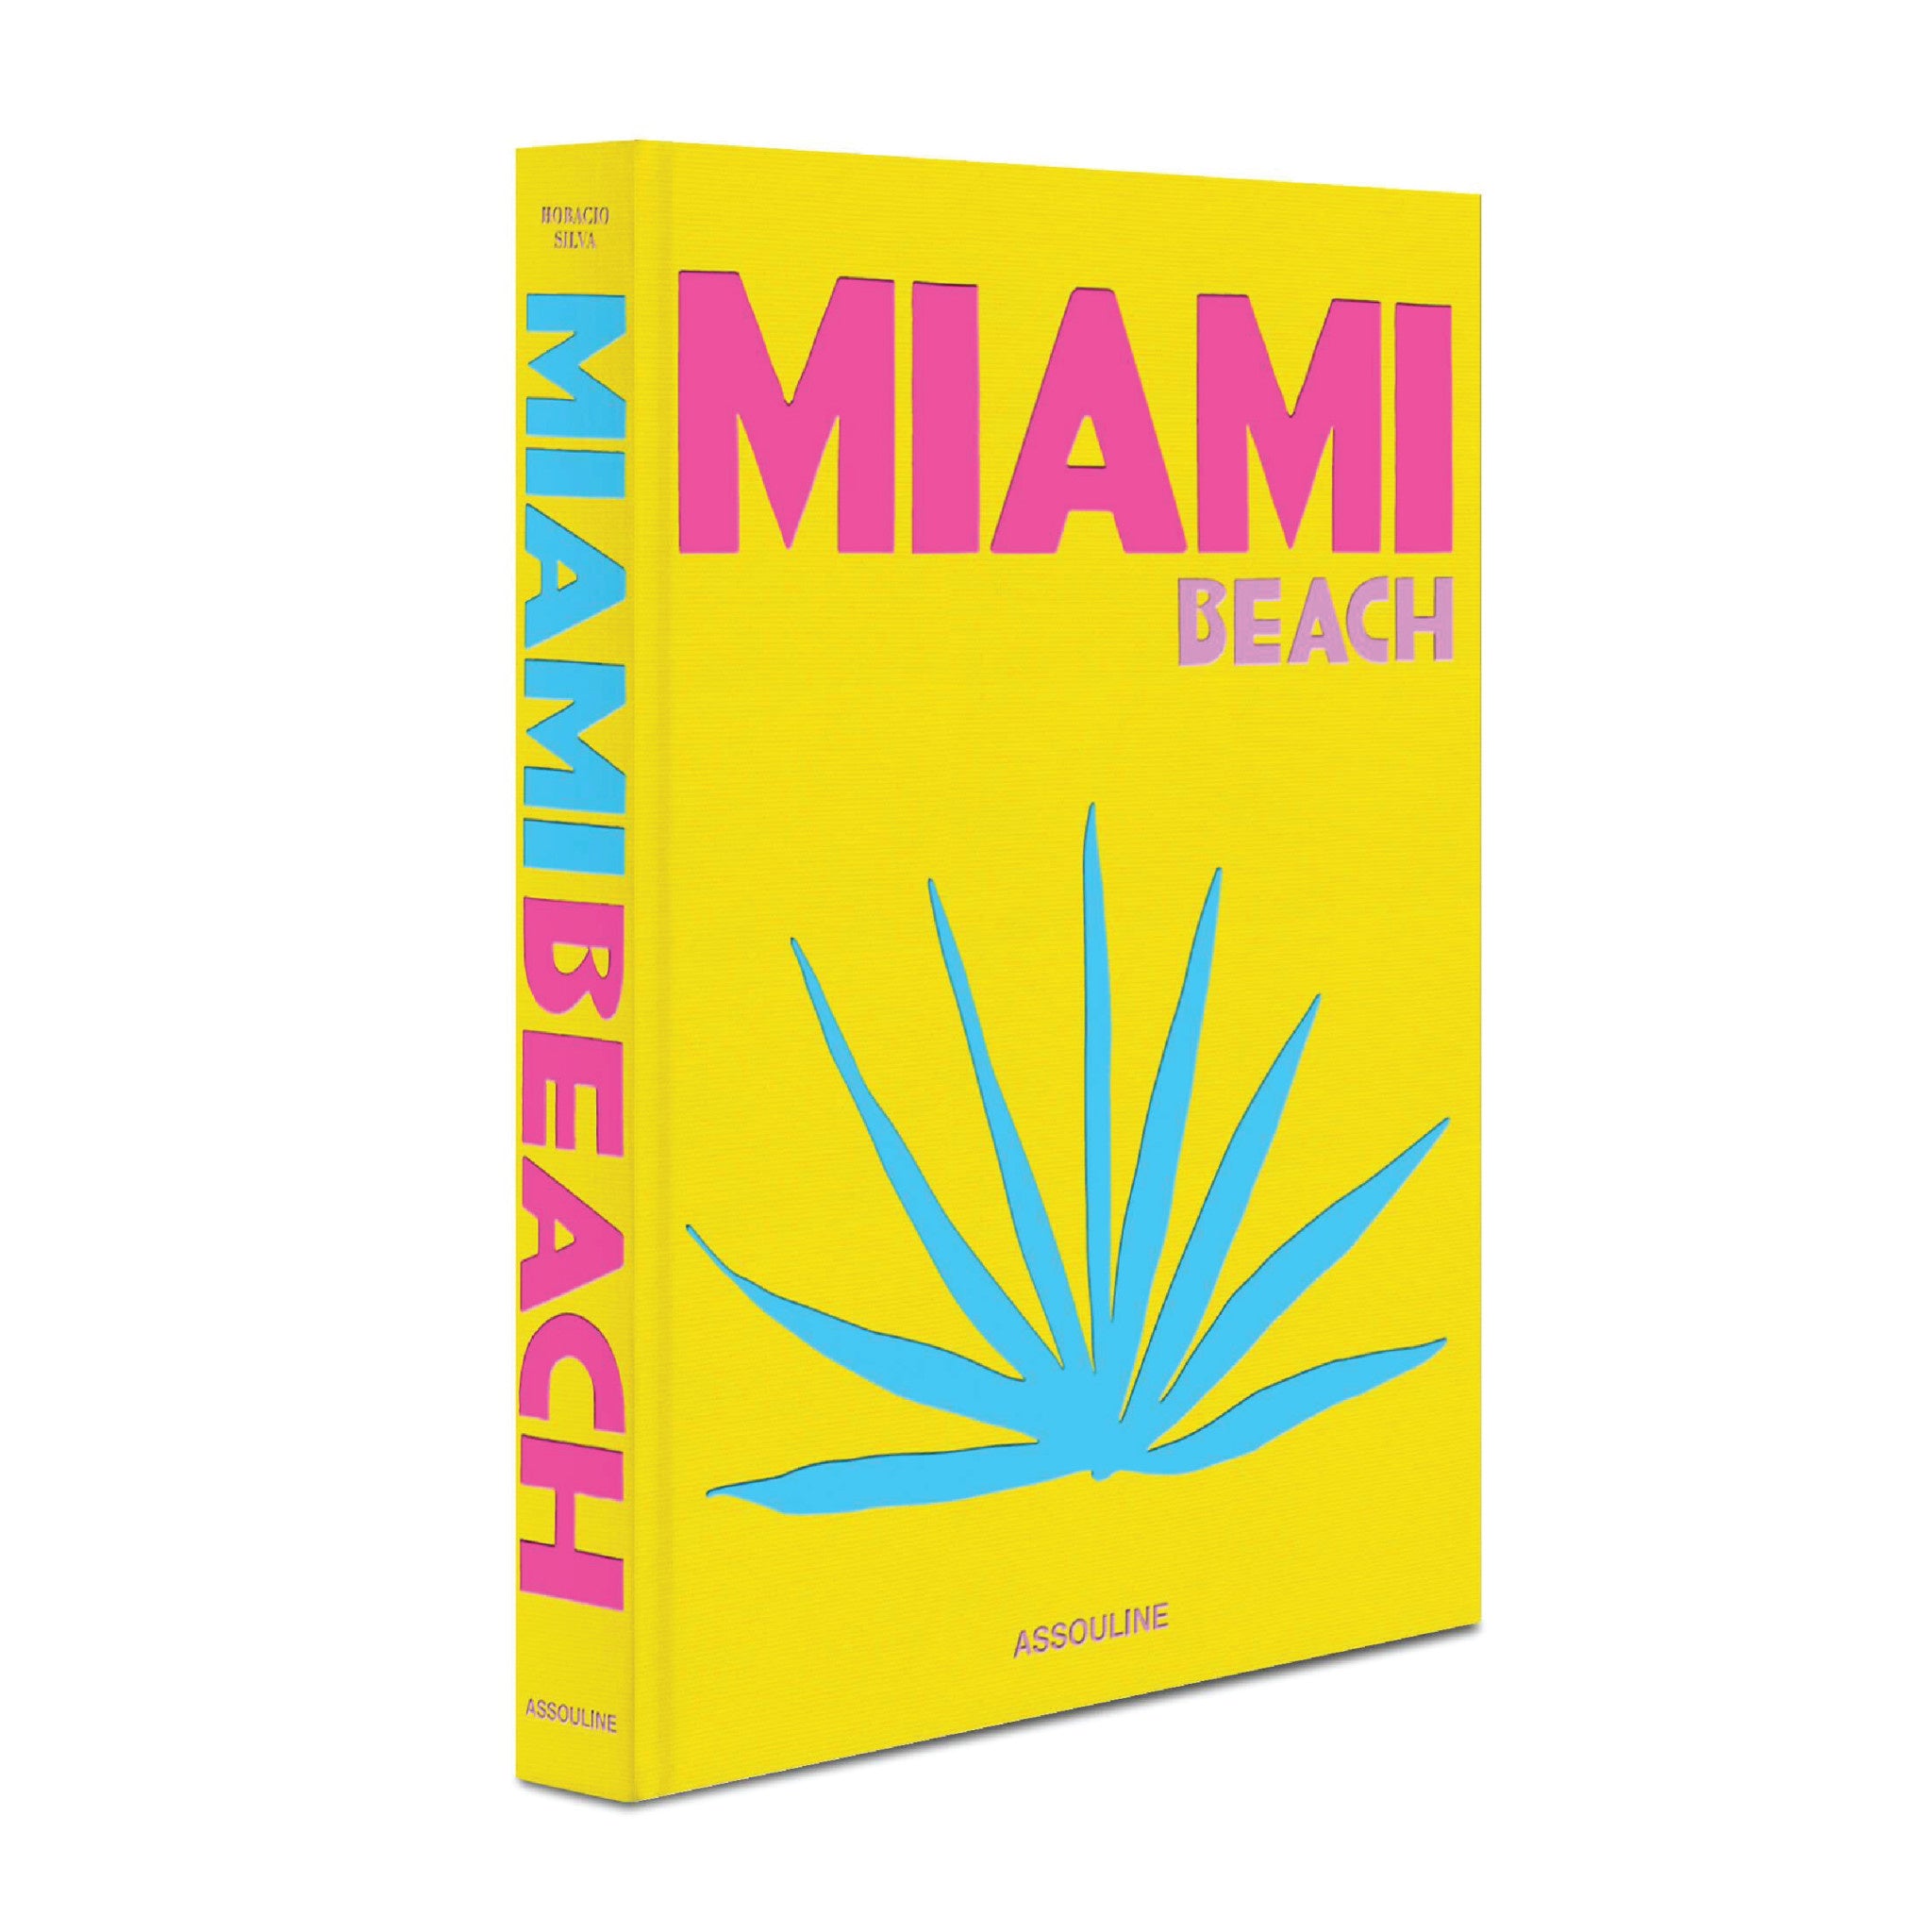 Miami Beach - Wynwood Walls Shop